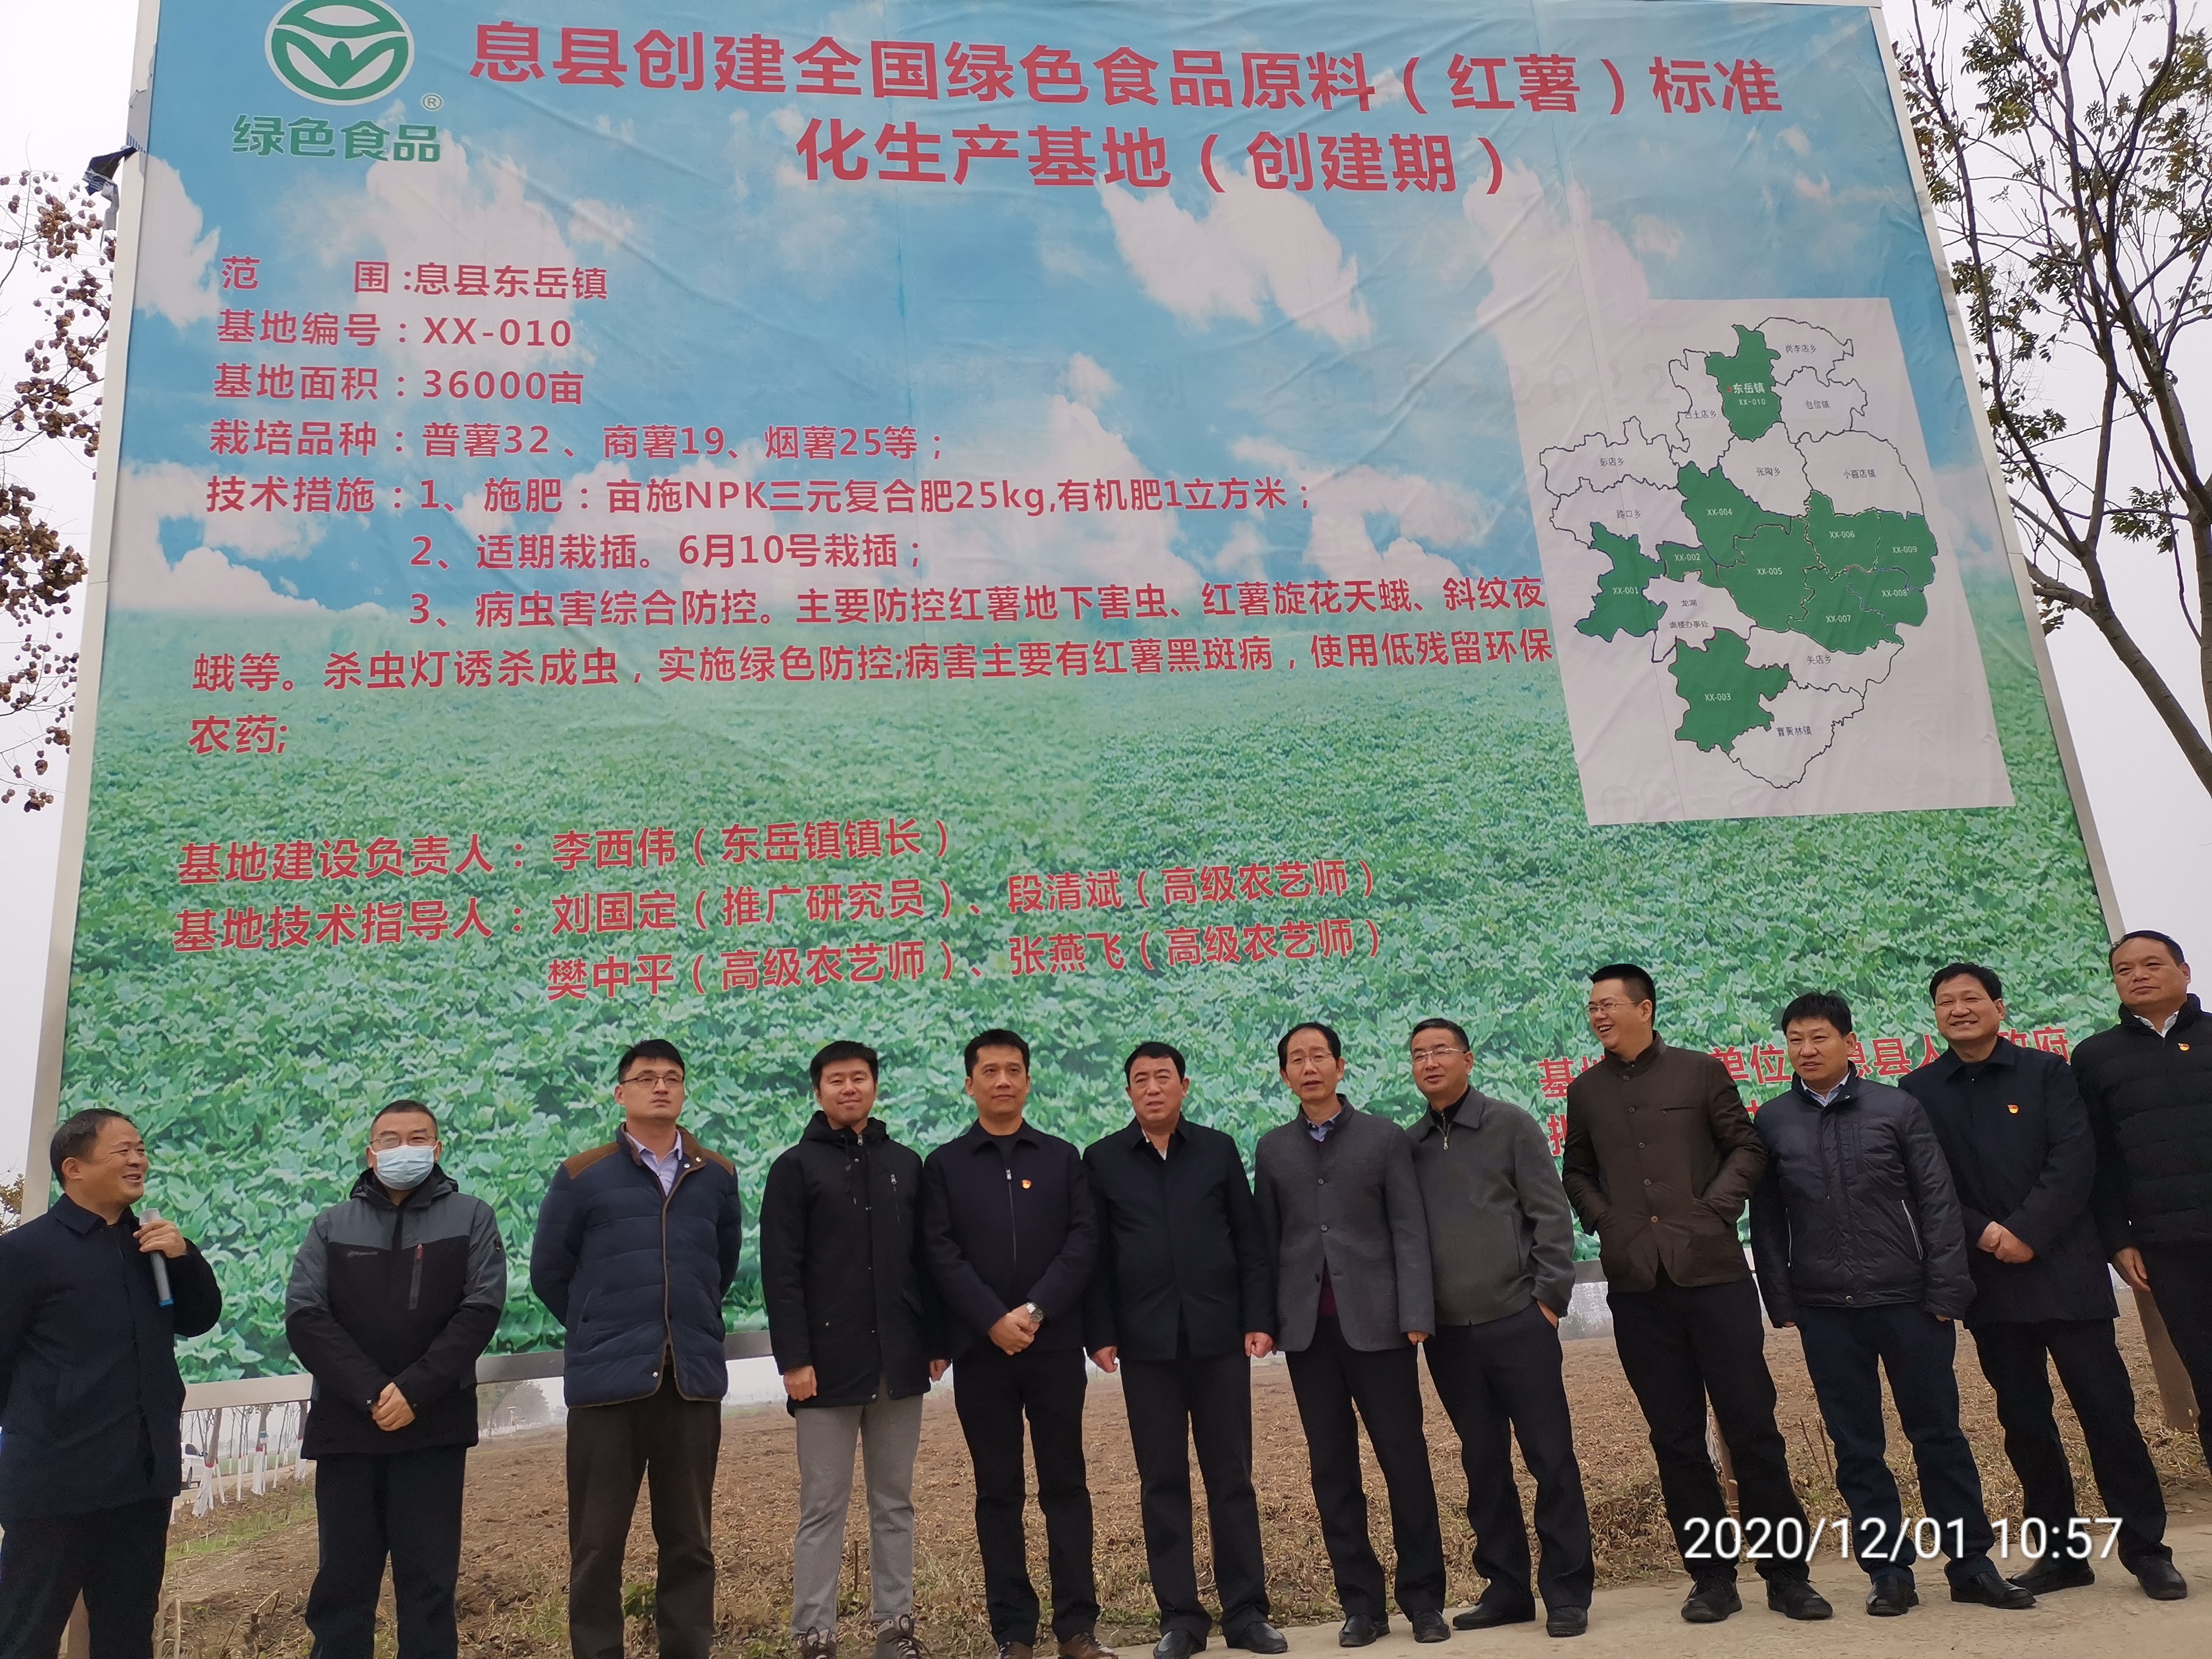 息县、舞阳县全国绿色食品原料标准化生产基地创建工作双双通过专家验收